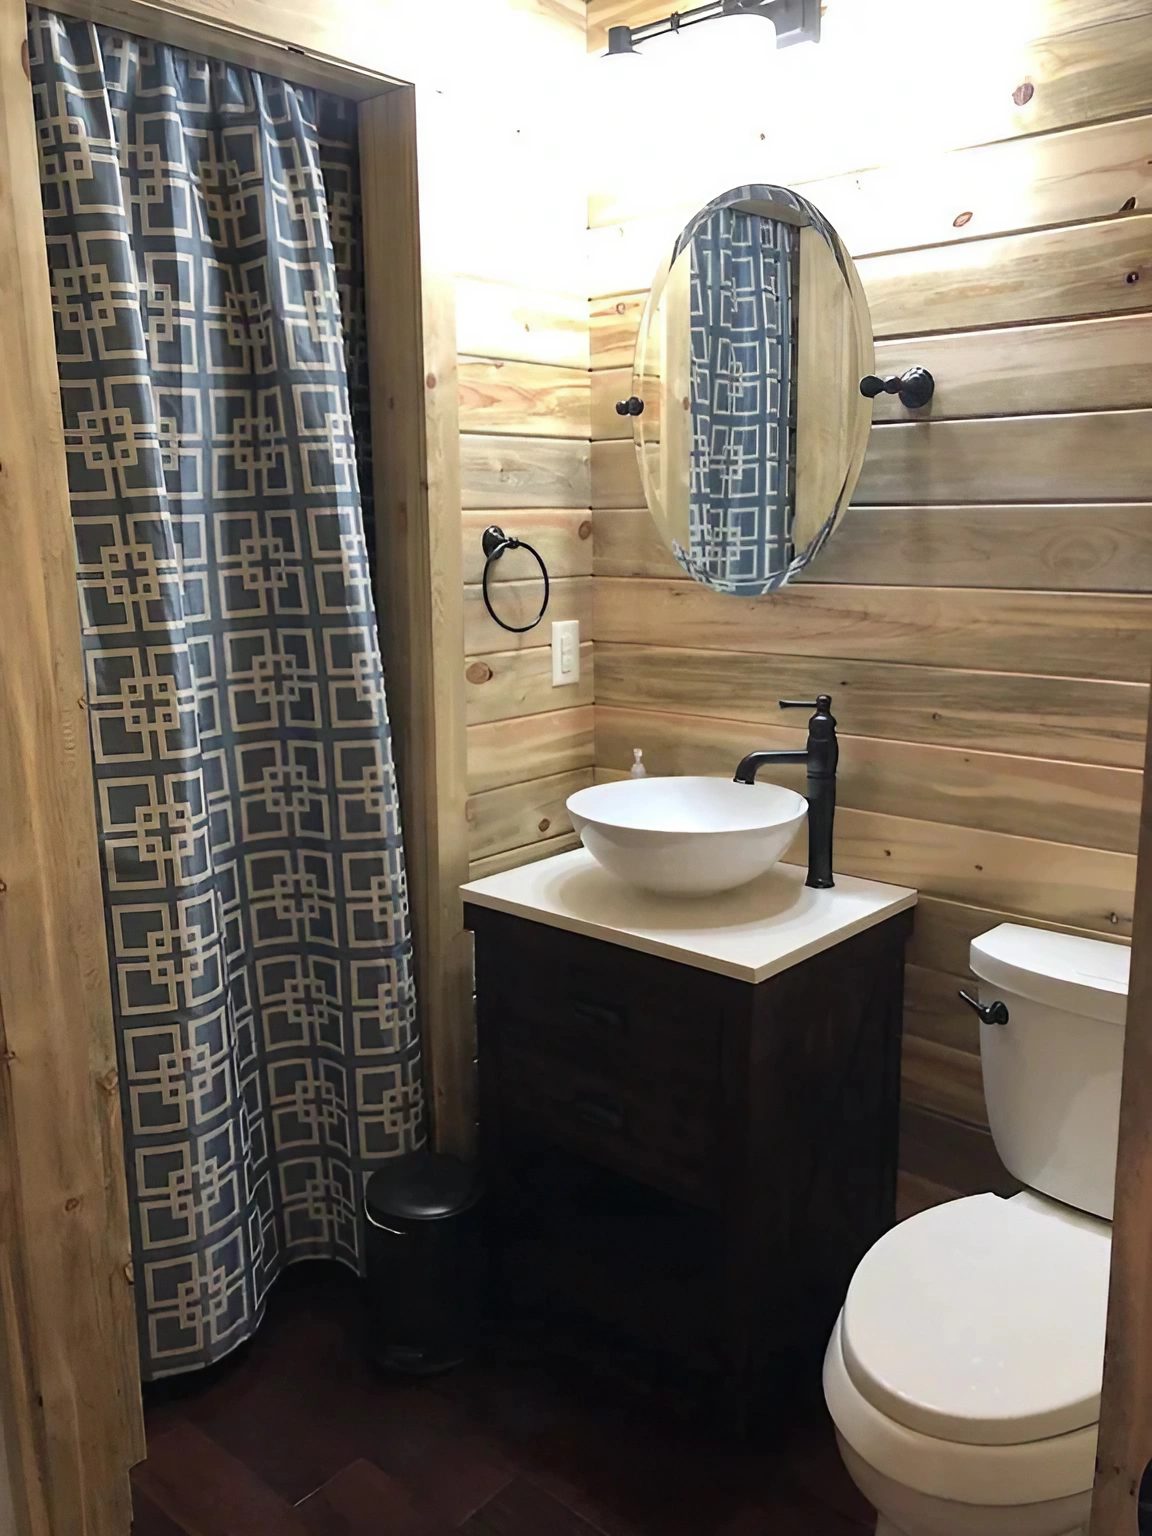 salle de bain murs en bois